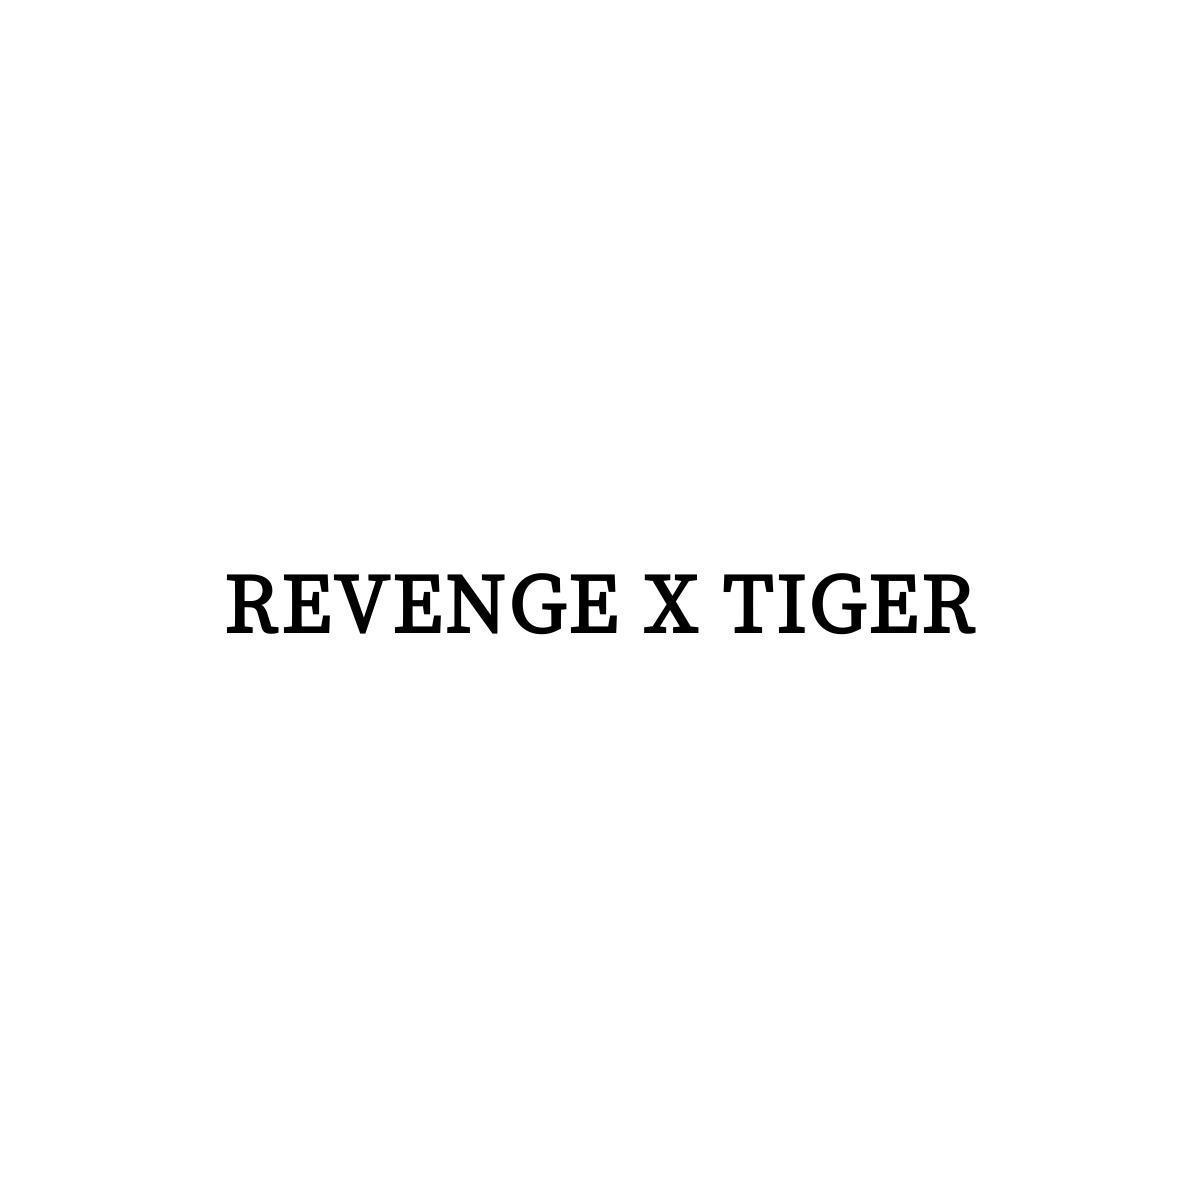 REVENGE X TIGER